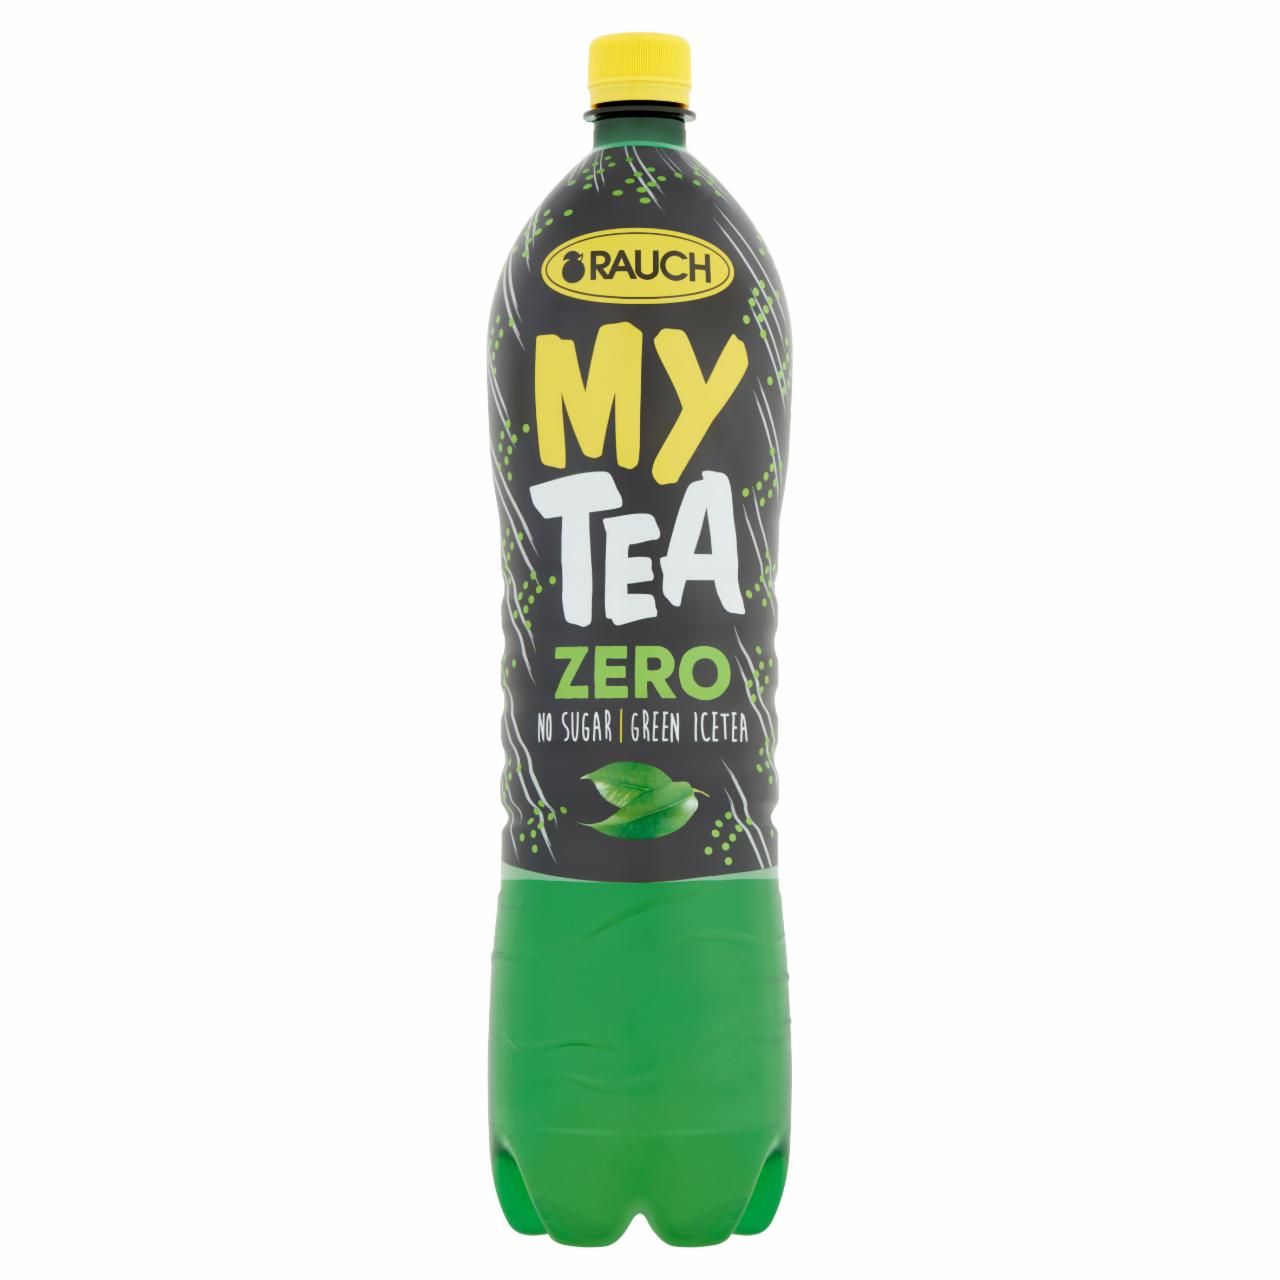 Képek - Rauch My Tea Zero cukormentes ice tea üdítőital zöld teából, édesítőszerekkel 1,5 l